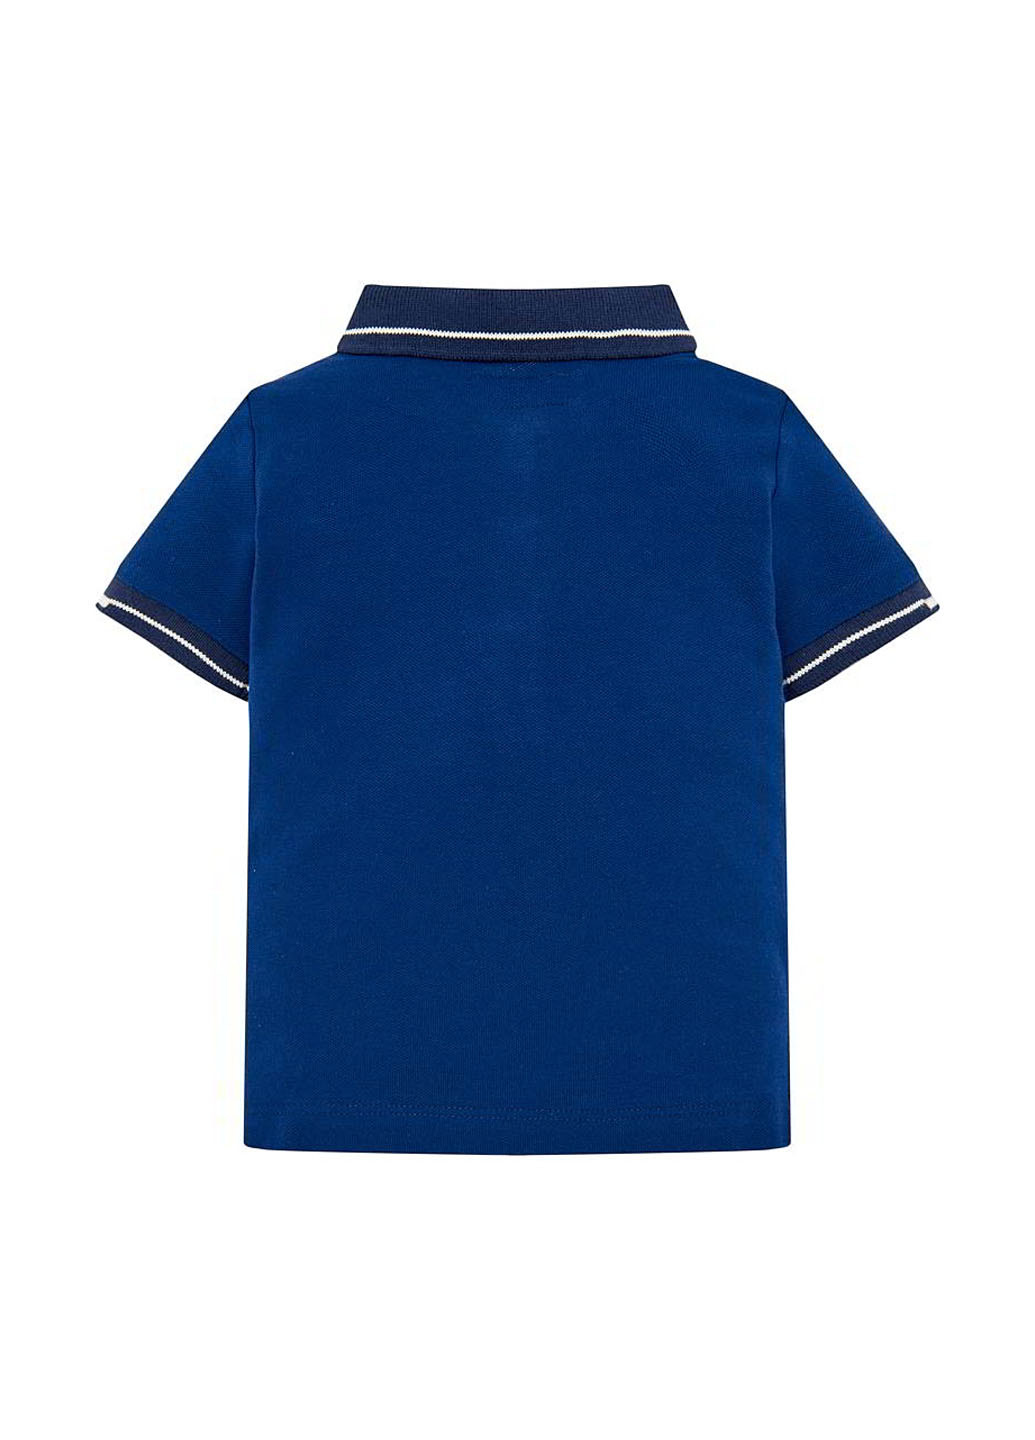 Синяя детская футболка-поло для мальчика Mayoral с рисунком